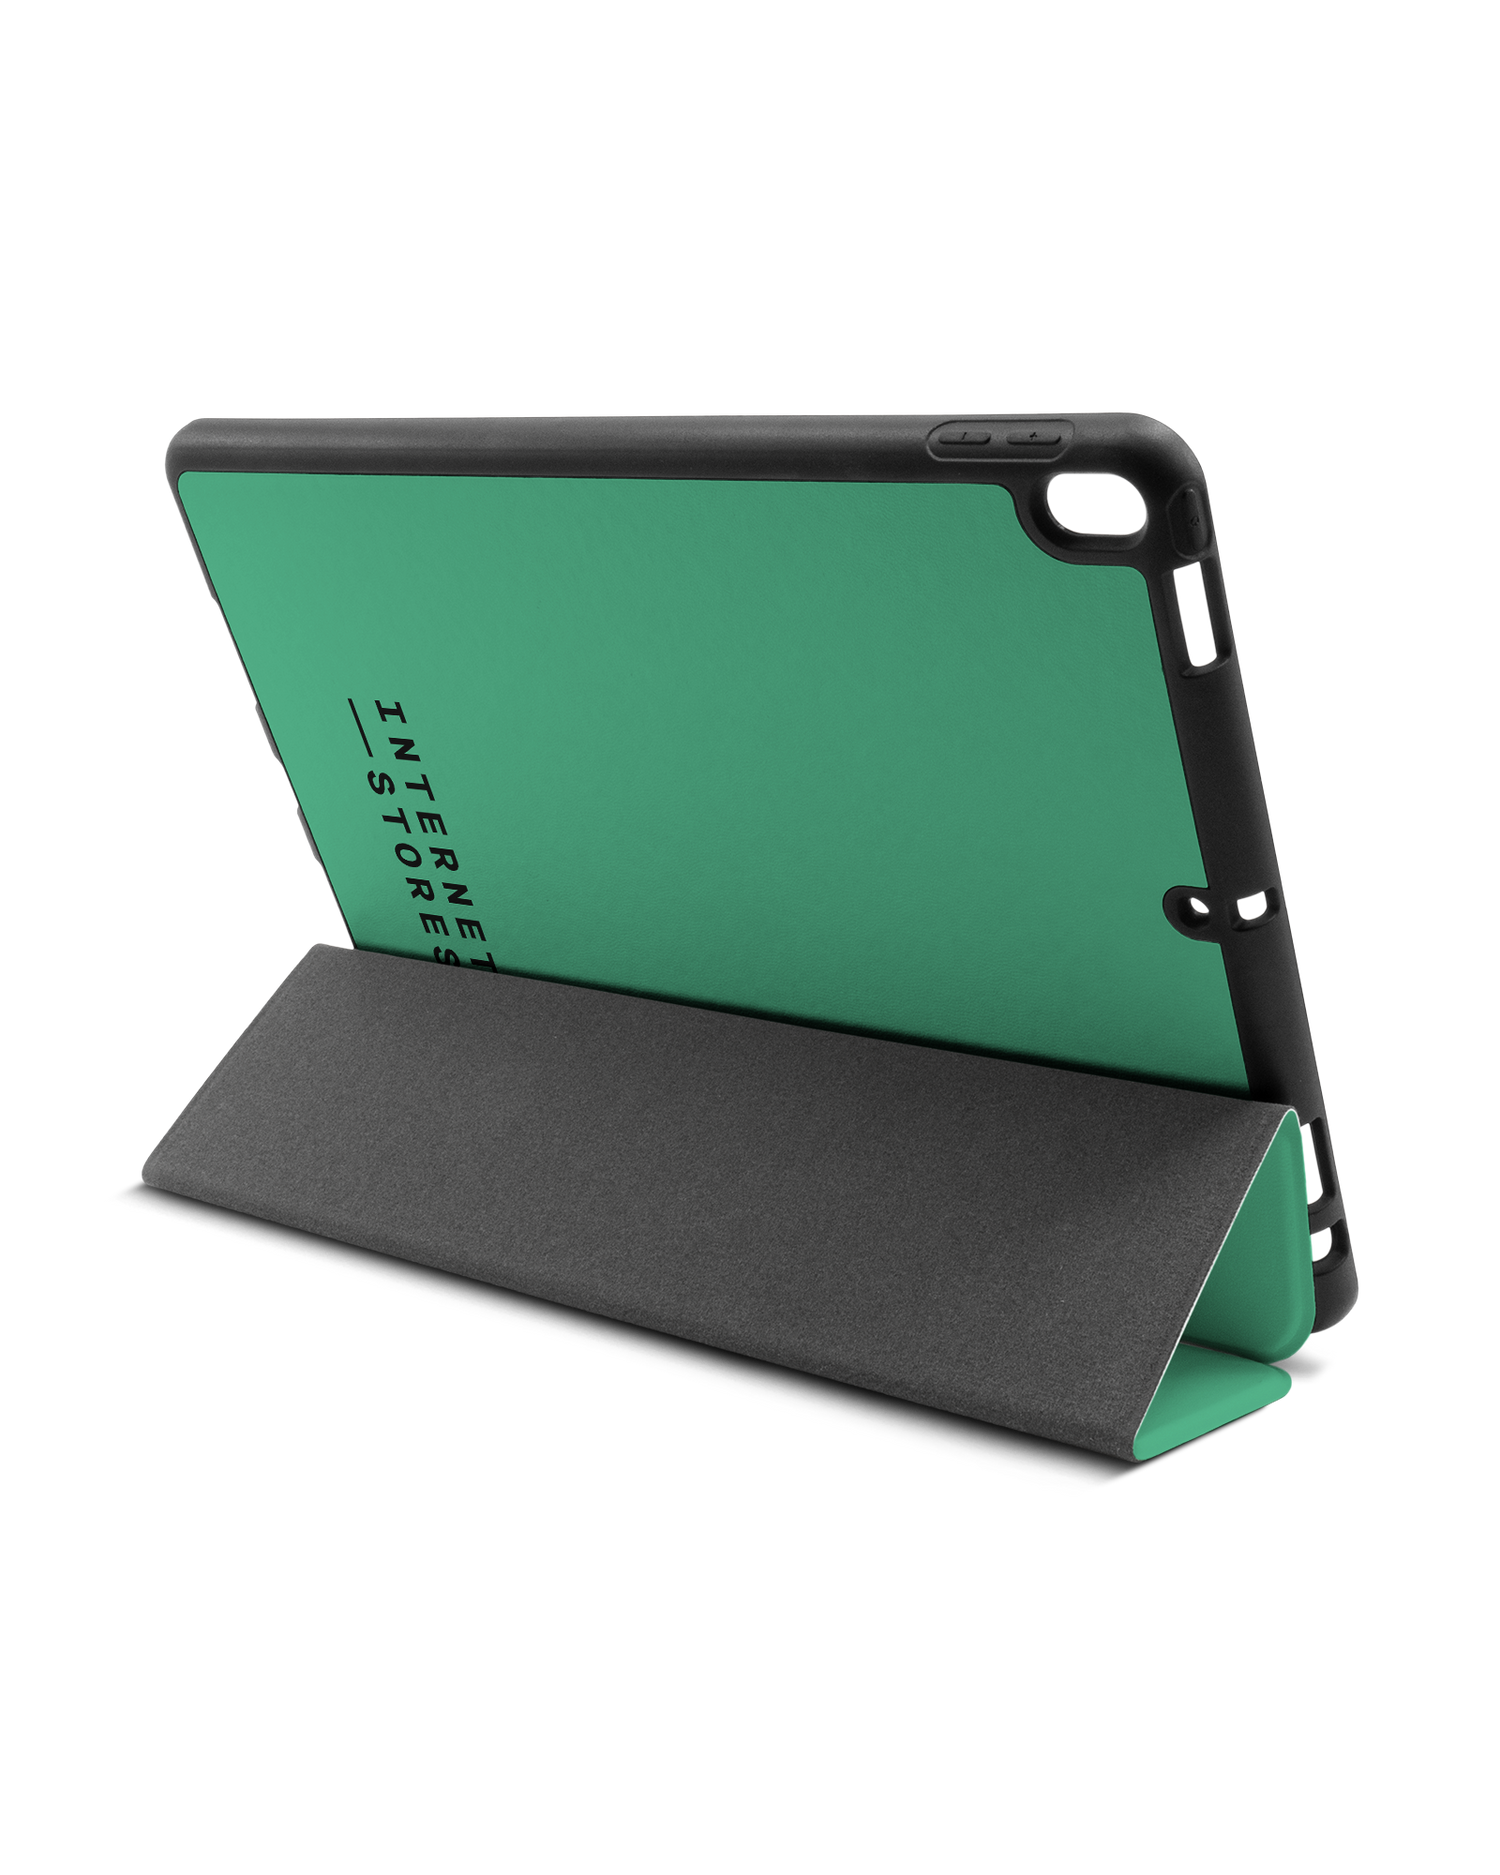 ISG Neon Green iPad Hülle mit Stifthalter Apple iPad Pro 10.5